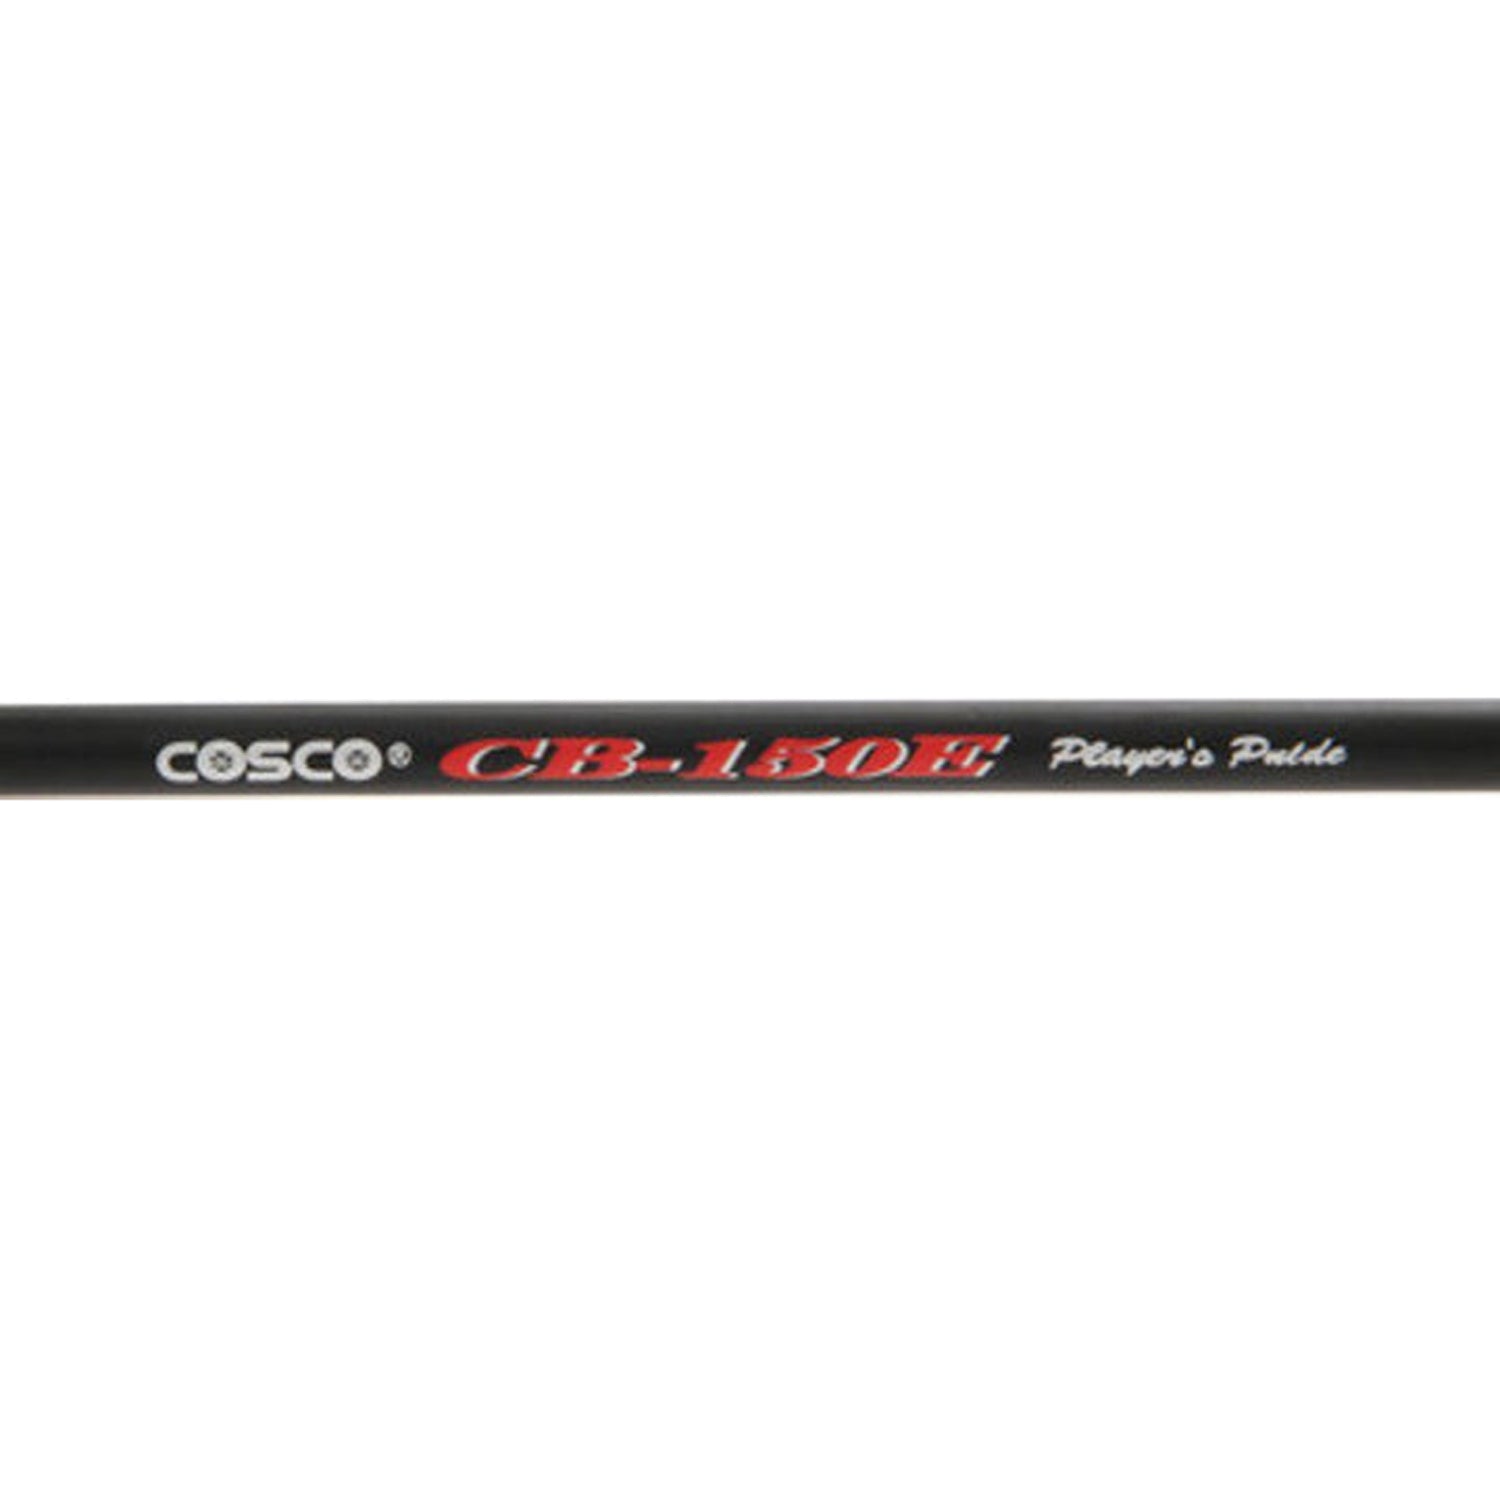 cosco cb 150 price